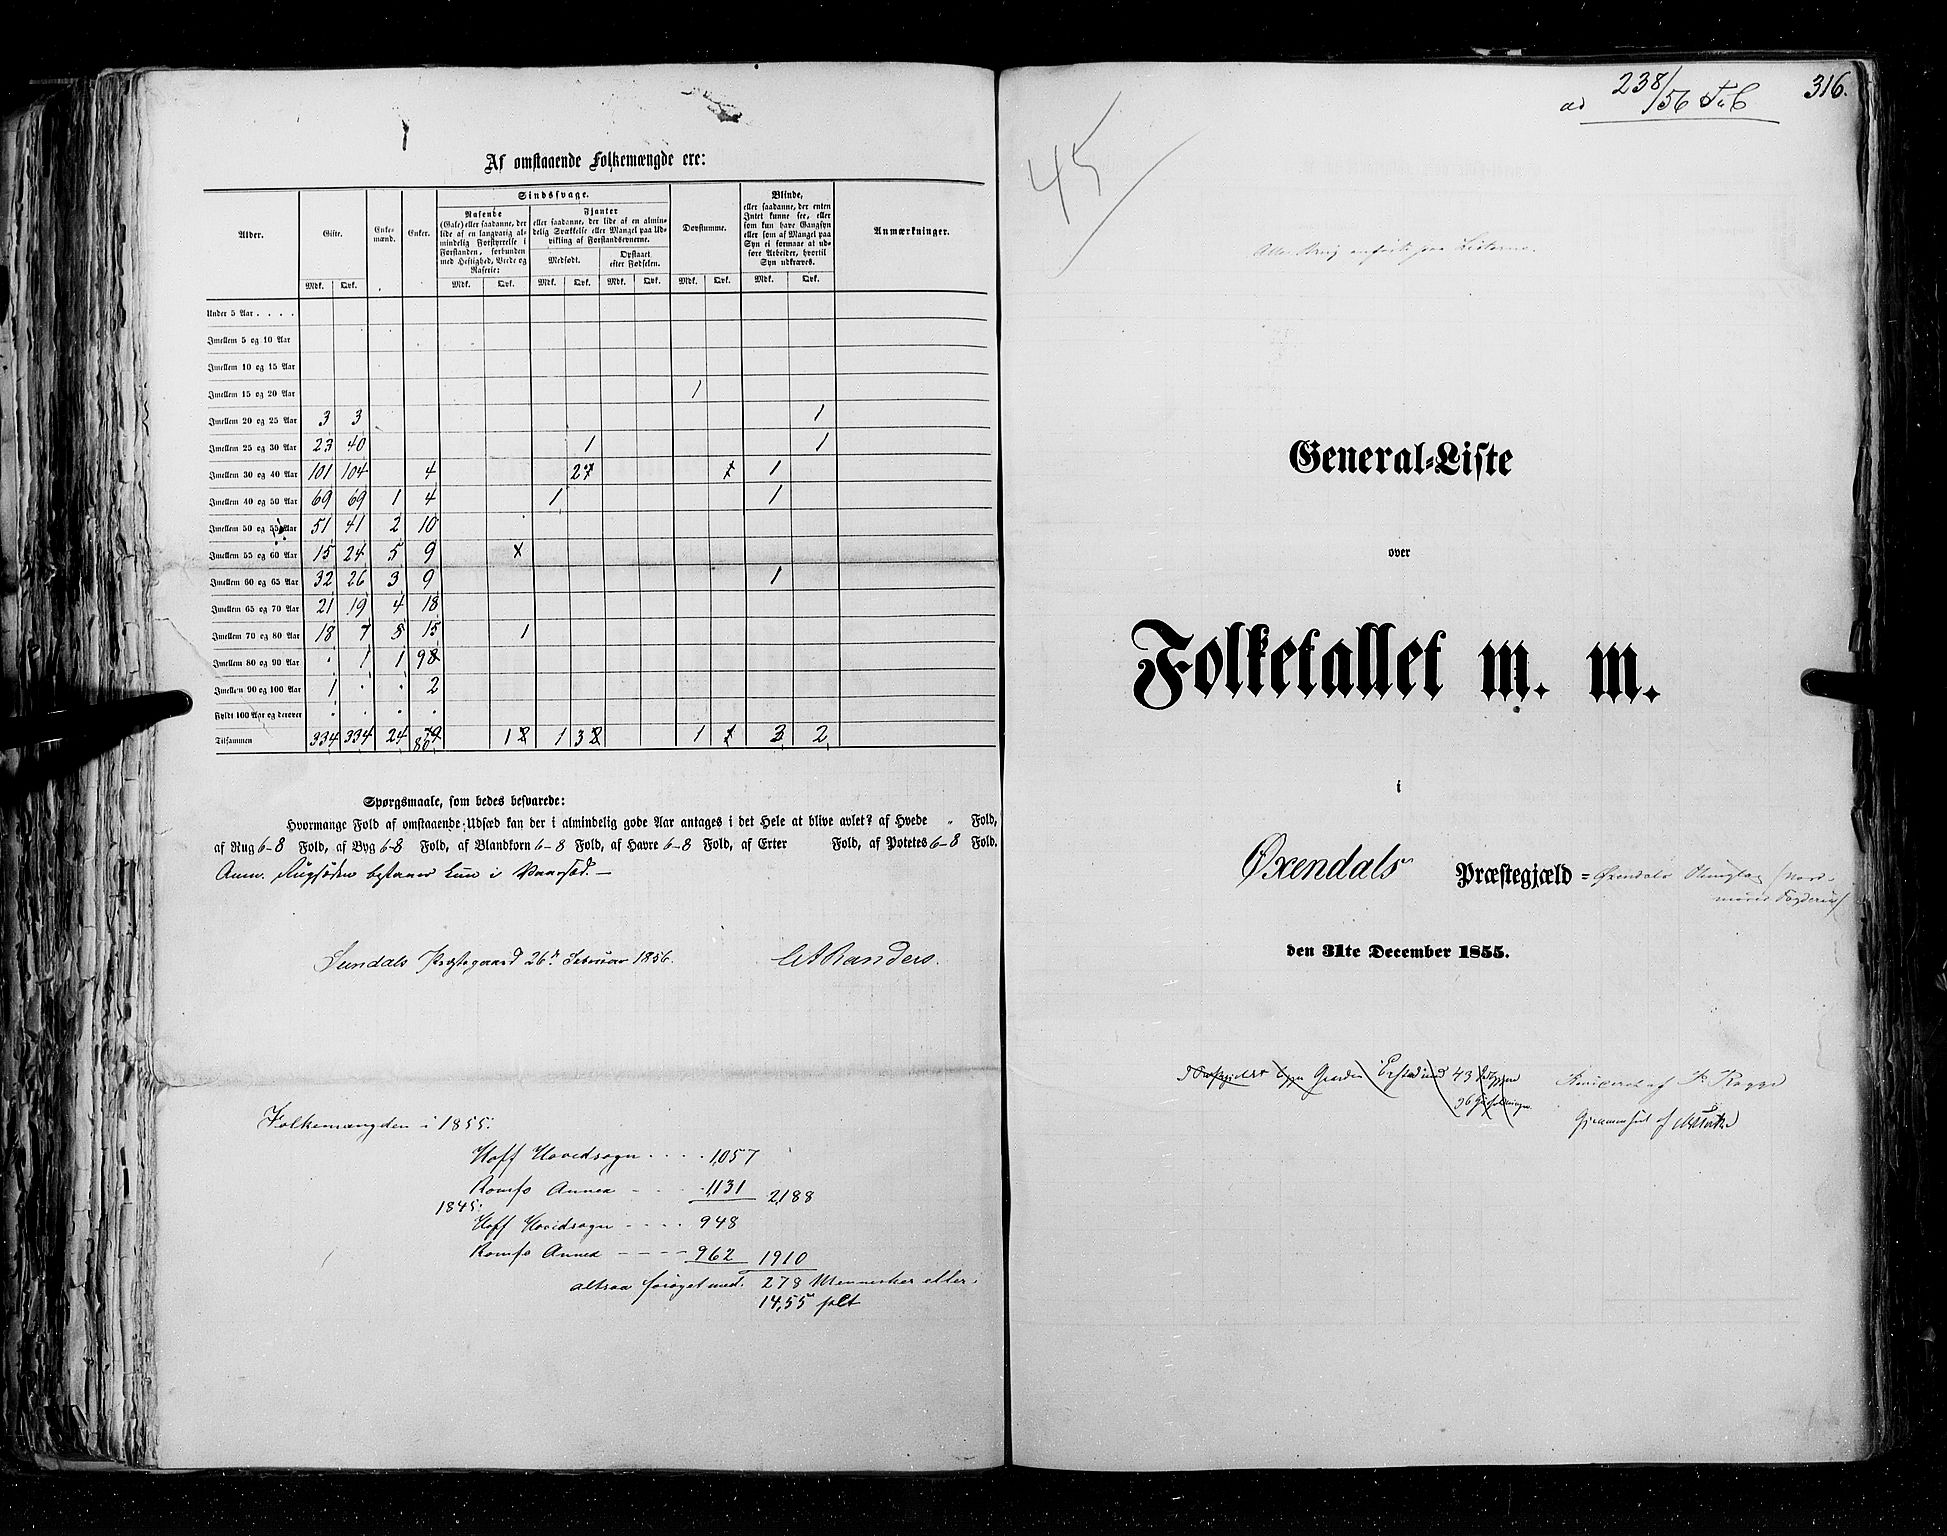 RA, Census 1855, vol. 5: Nordre Bergenhus amt, Romsdal amt og Søndre Trondhjem amt, 1855, p. 316